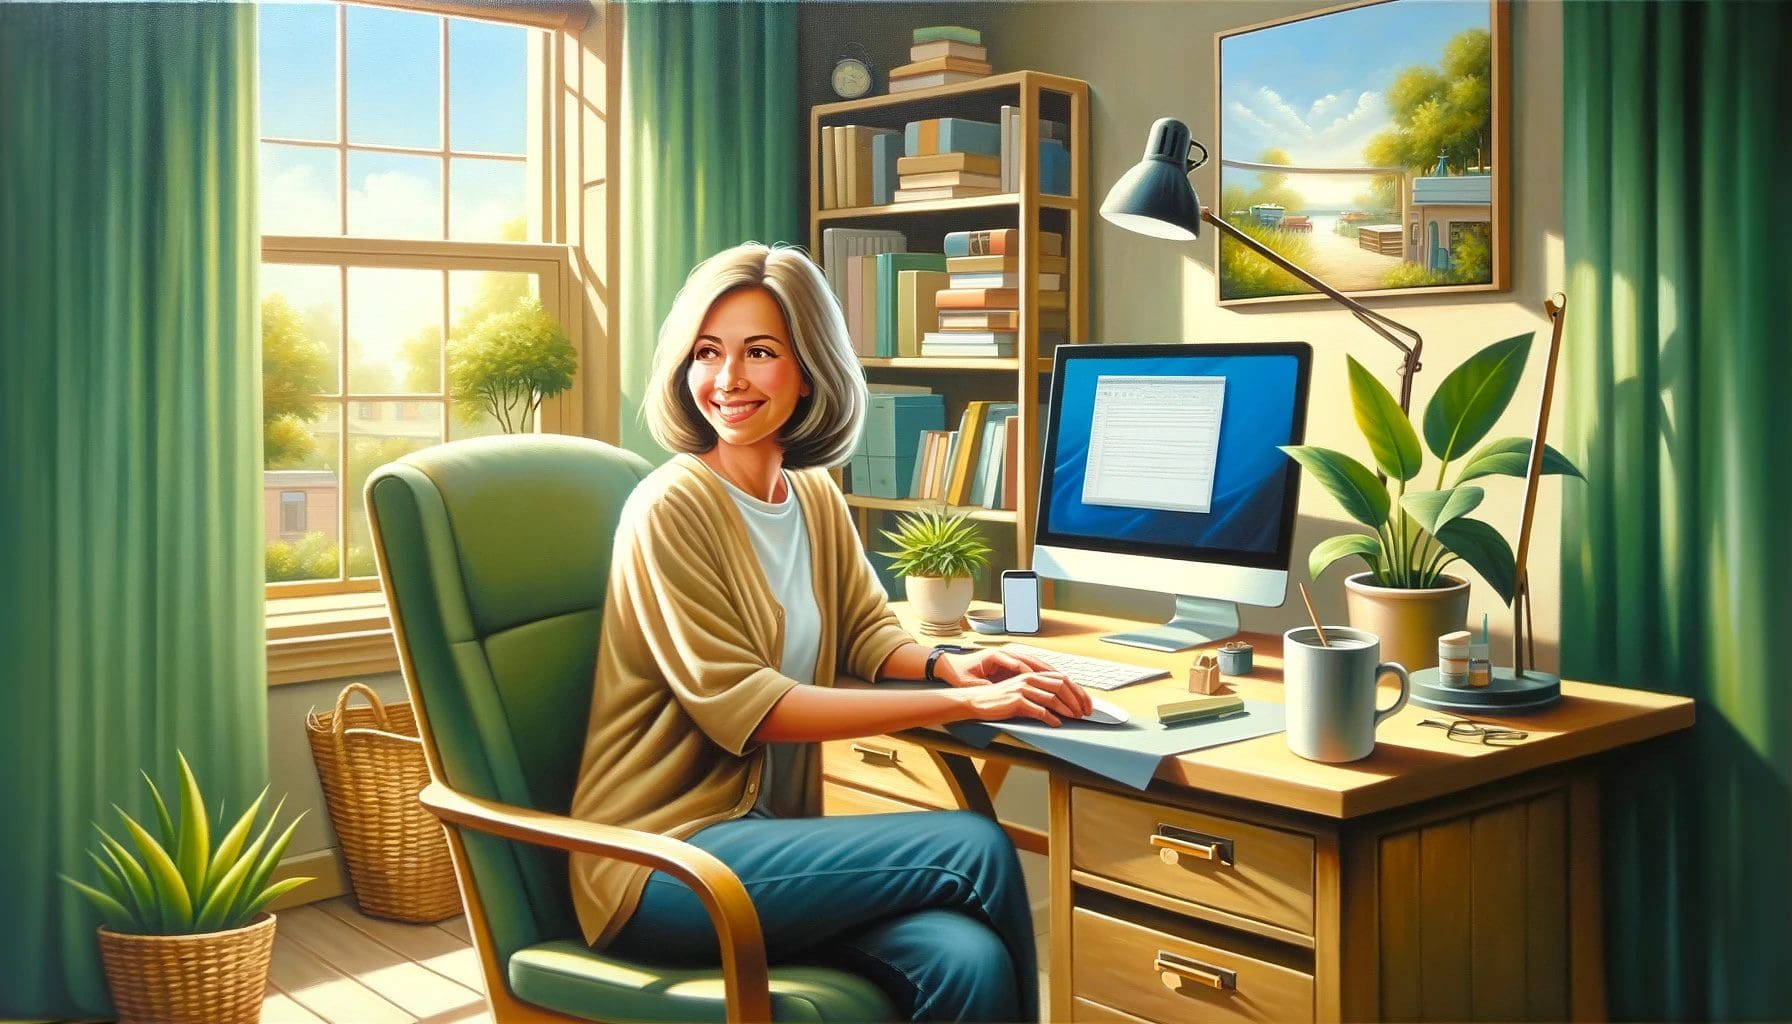 Kvinna som sitter och jobbar vide ett skrivbord och kan hålla fokus på hemmakontoret